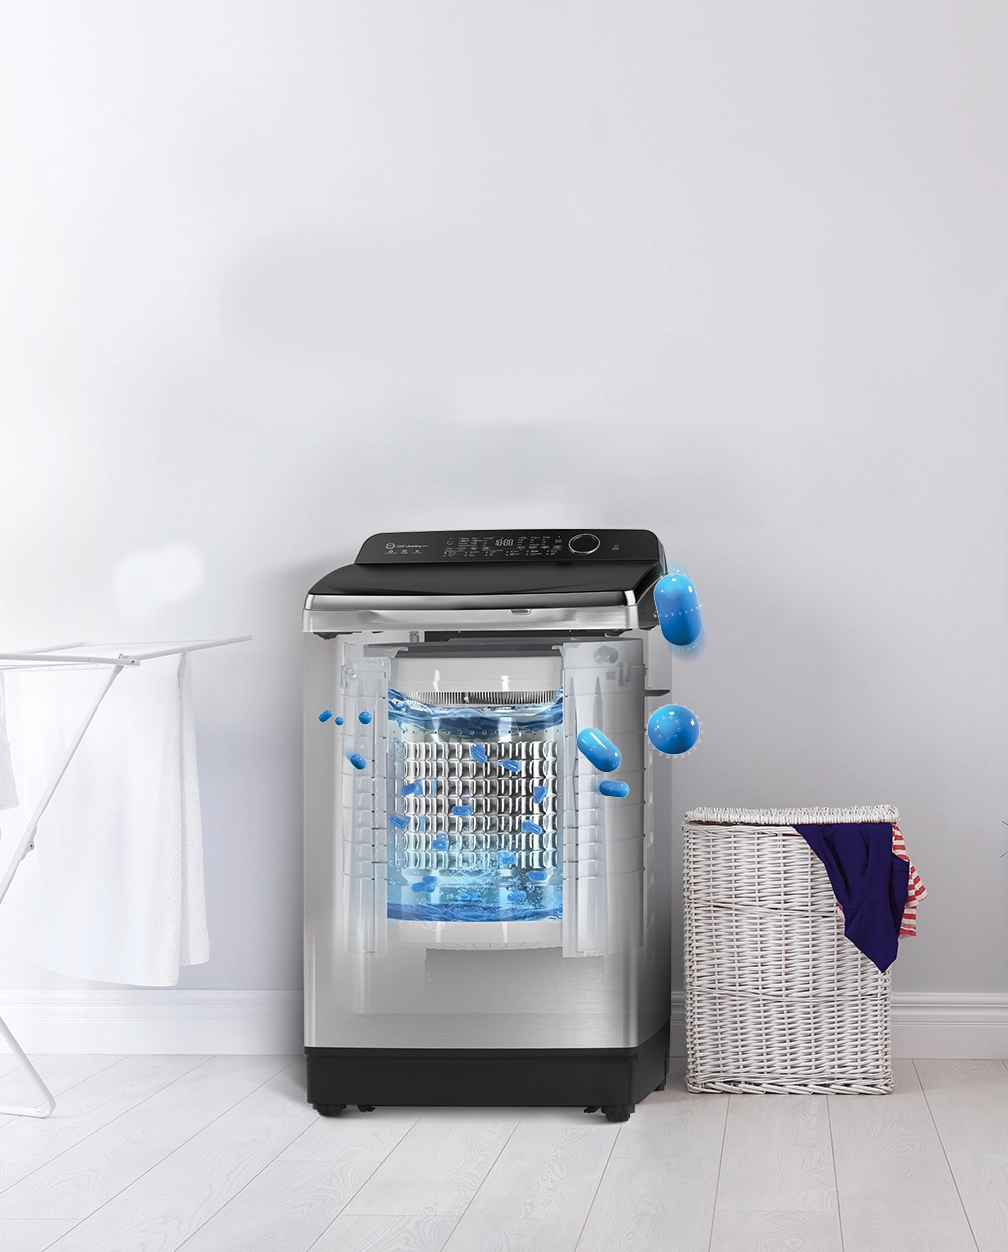 Yên tâm áo quần sạch như ý với máy giặt aqua tích hợp công nghệ tự vệ sinh mặt ngoài lồng giặt thông minh đầu tiên trên thị trường - 2